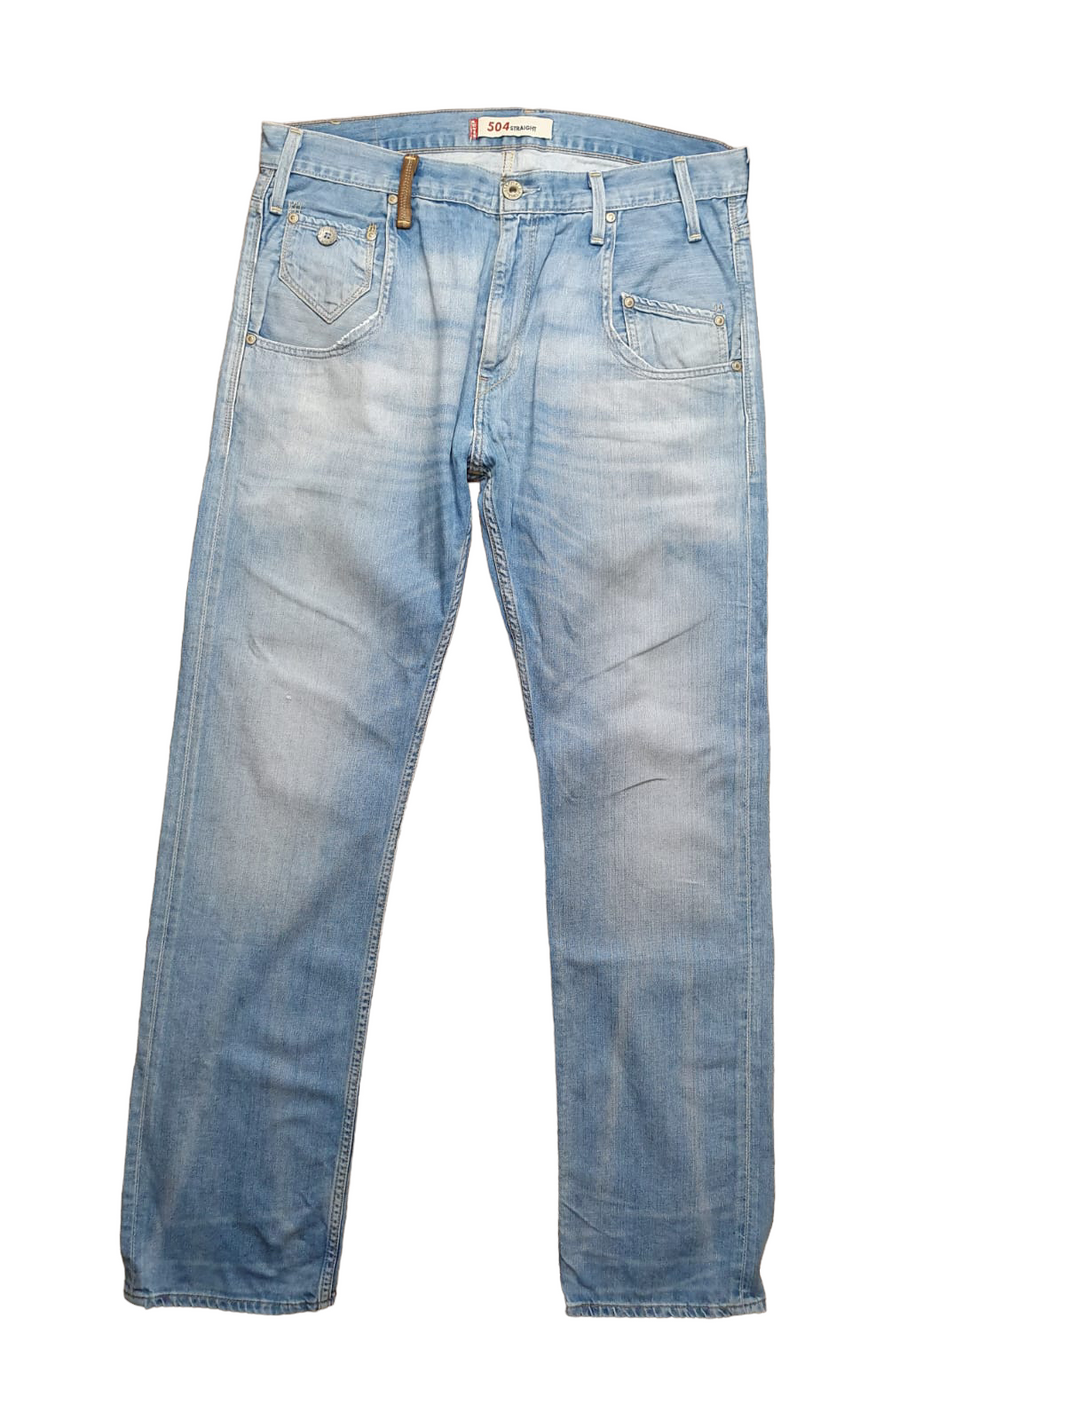 Levi’s 504 Jeans